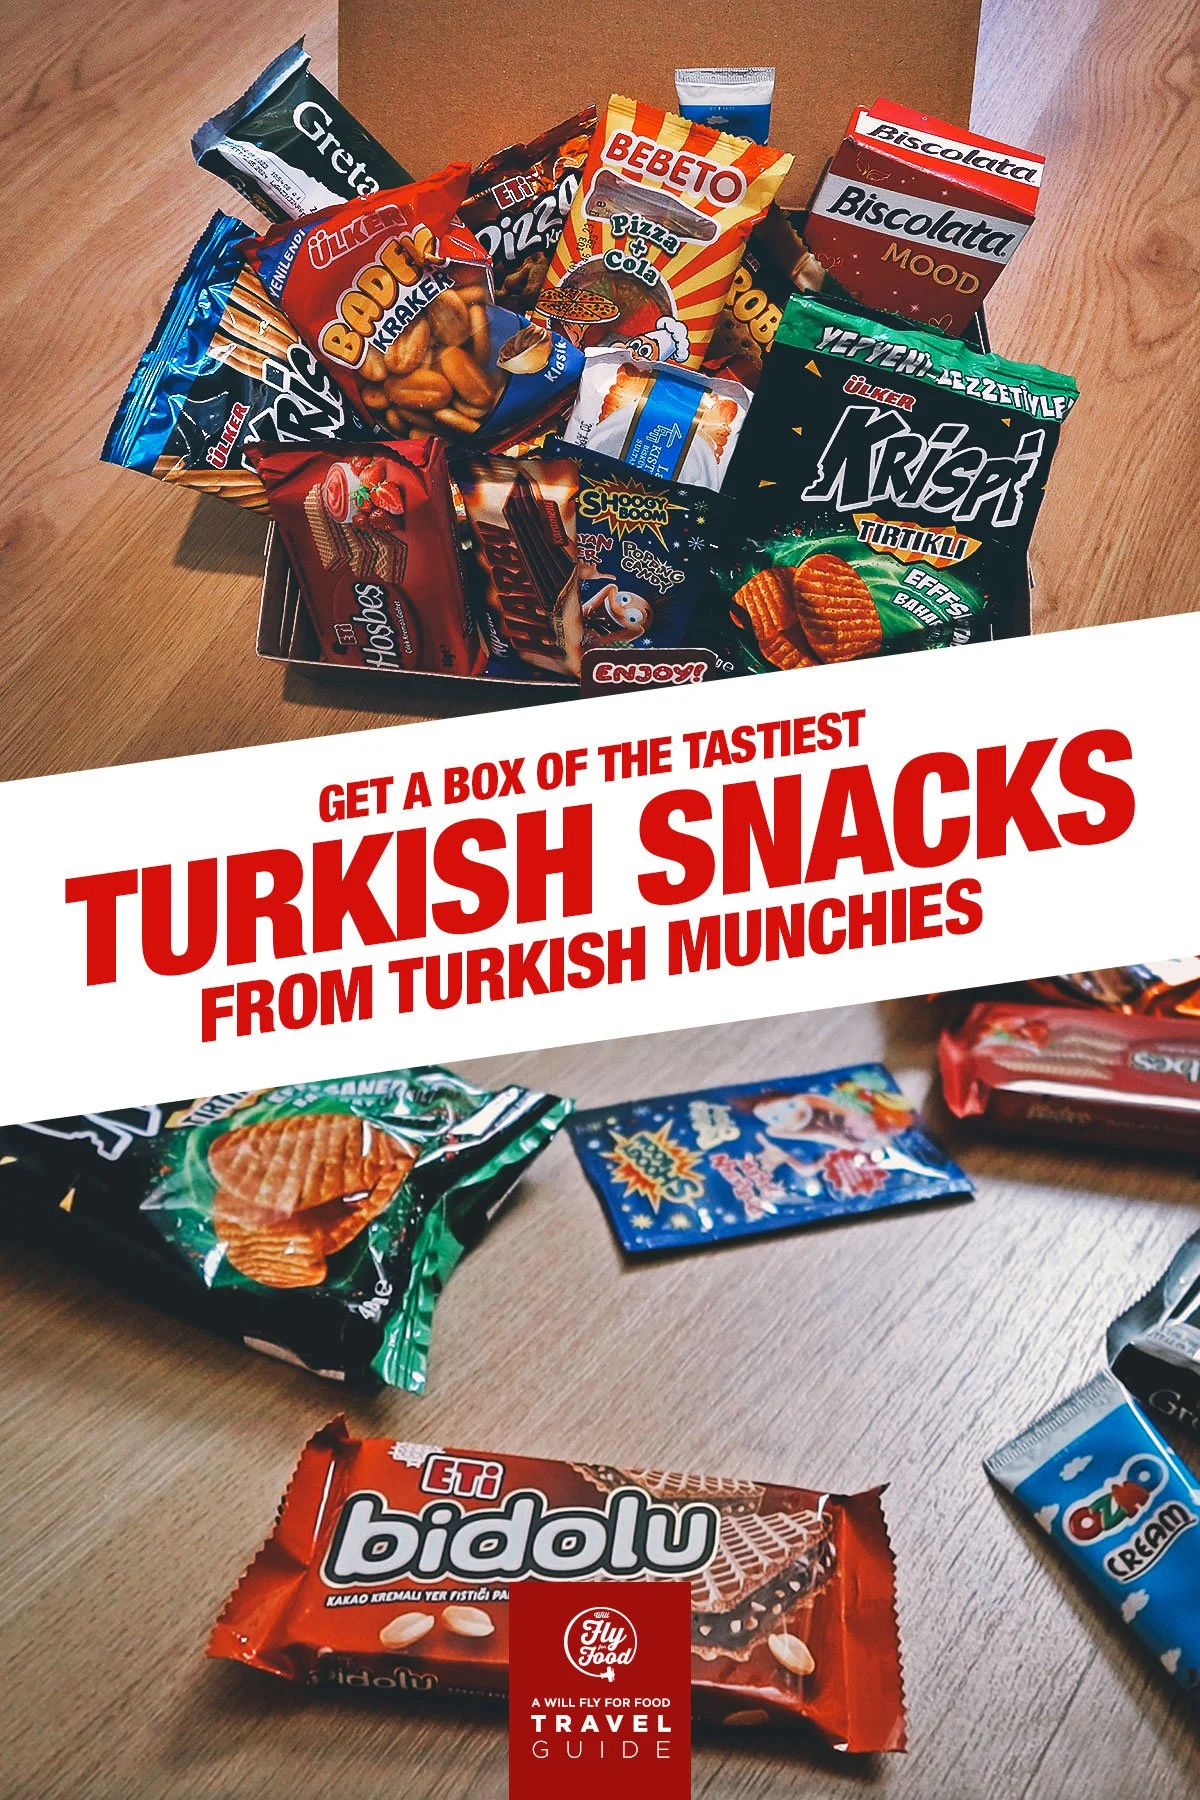 Turkish snacks from the Turkish Munchies snack box